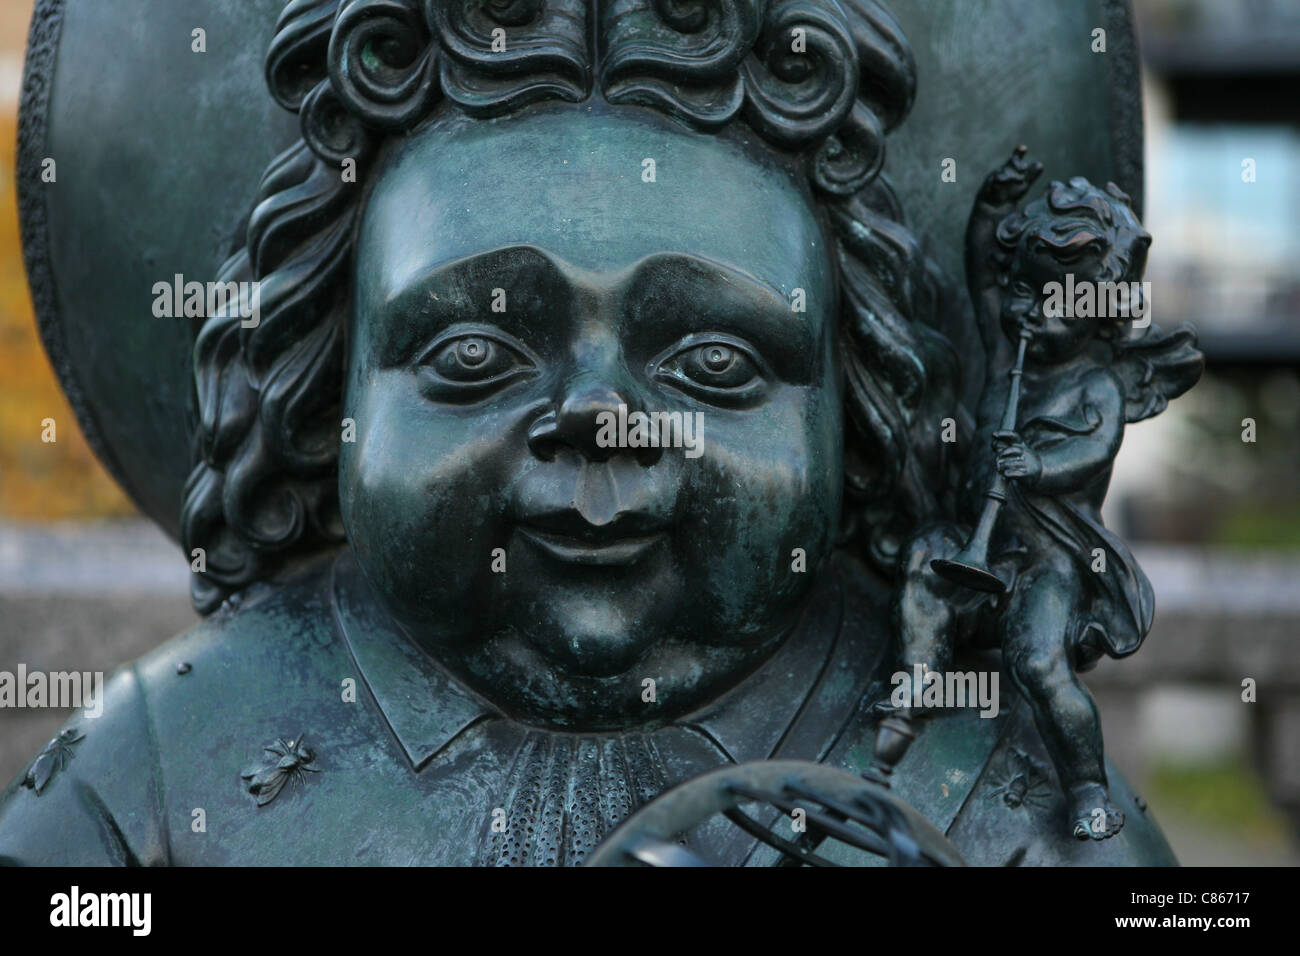 La nana in bronzo. Dettaglio del monumento a zar russo Pietro il Grande dello scultore Mihail Chemiakin in Deptford in Londra, Regno Unito. Foto Stock